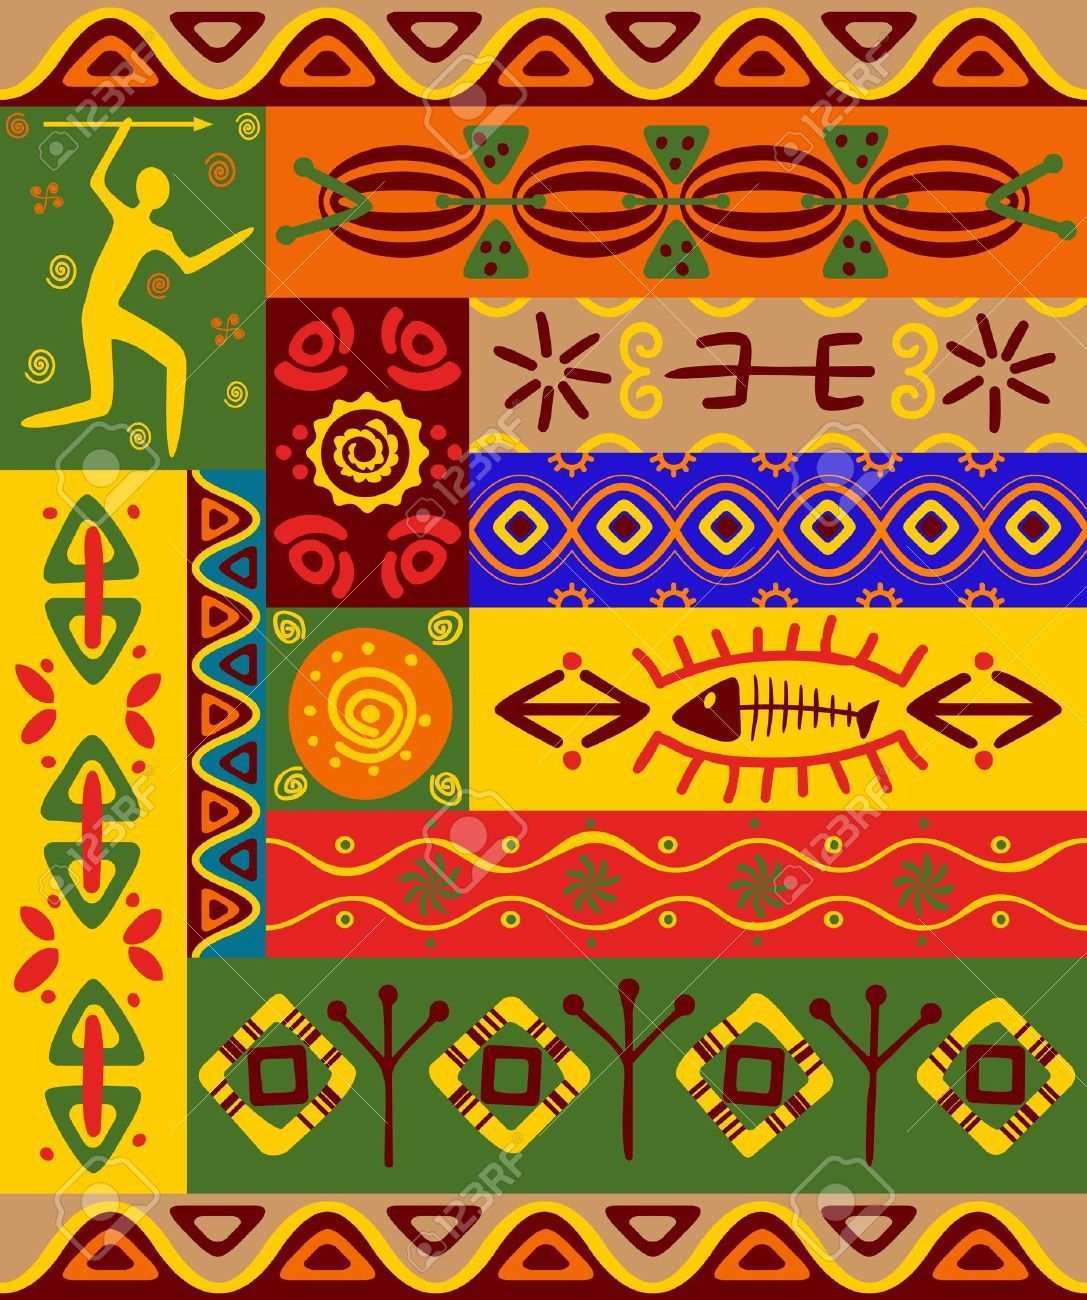 Abstrakt Ethnische Muster Und Ornamente Fur Design Standard Bild 9929699 Ethnische Muster Afrikanische Kunst Afrikanische Muster